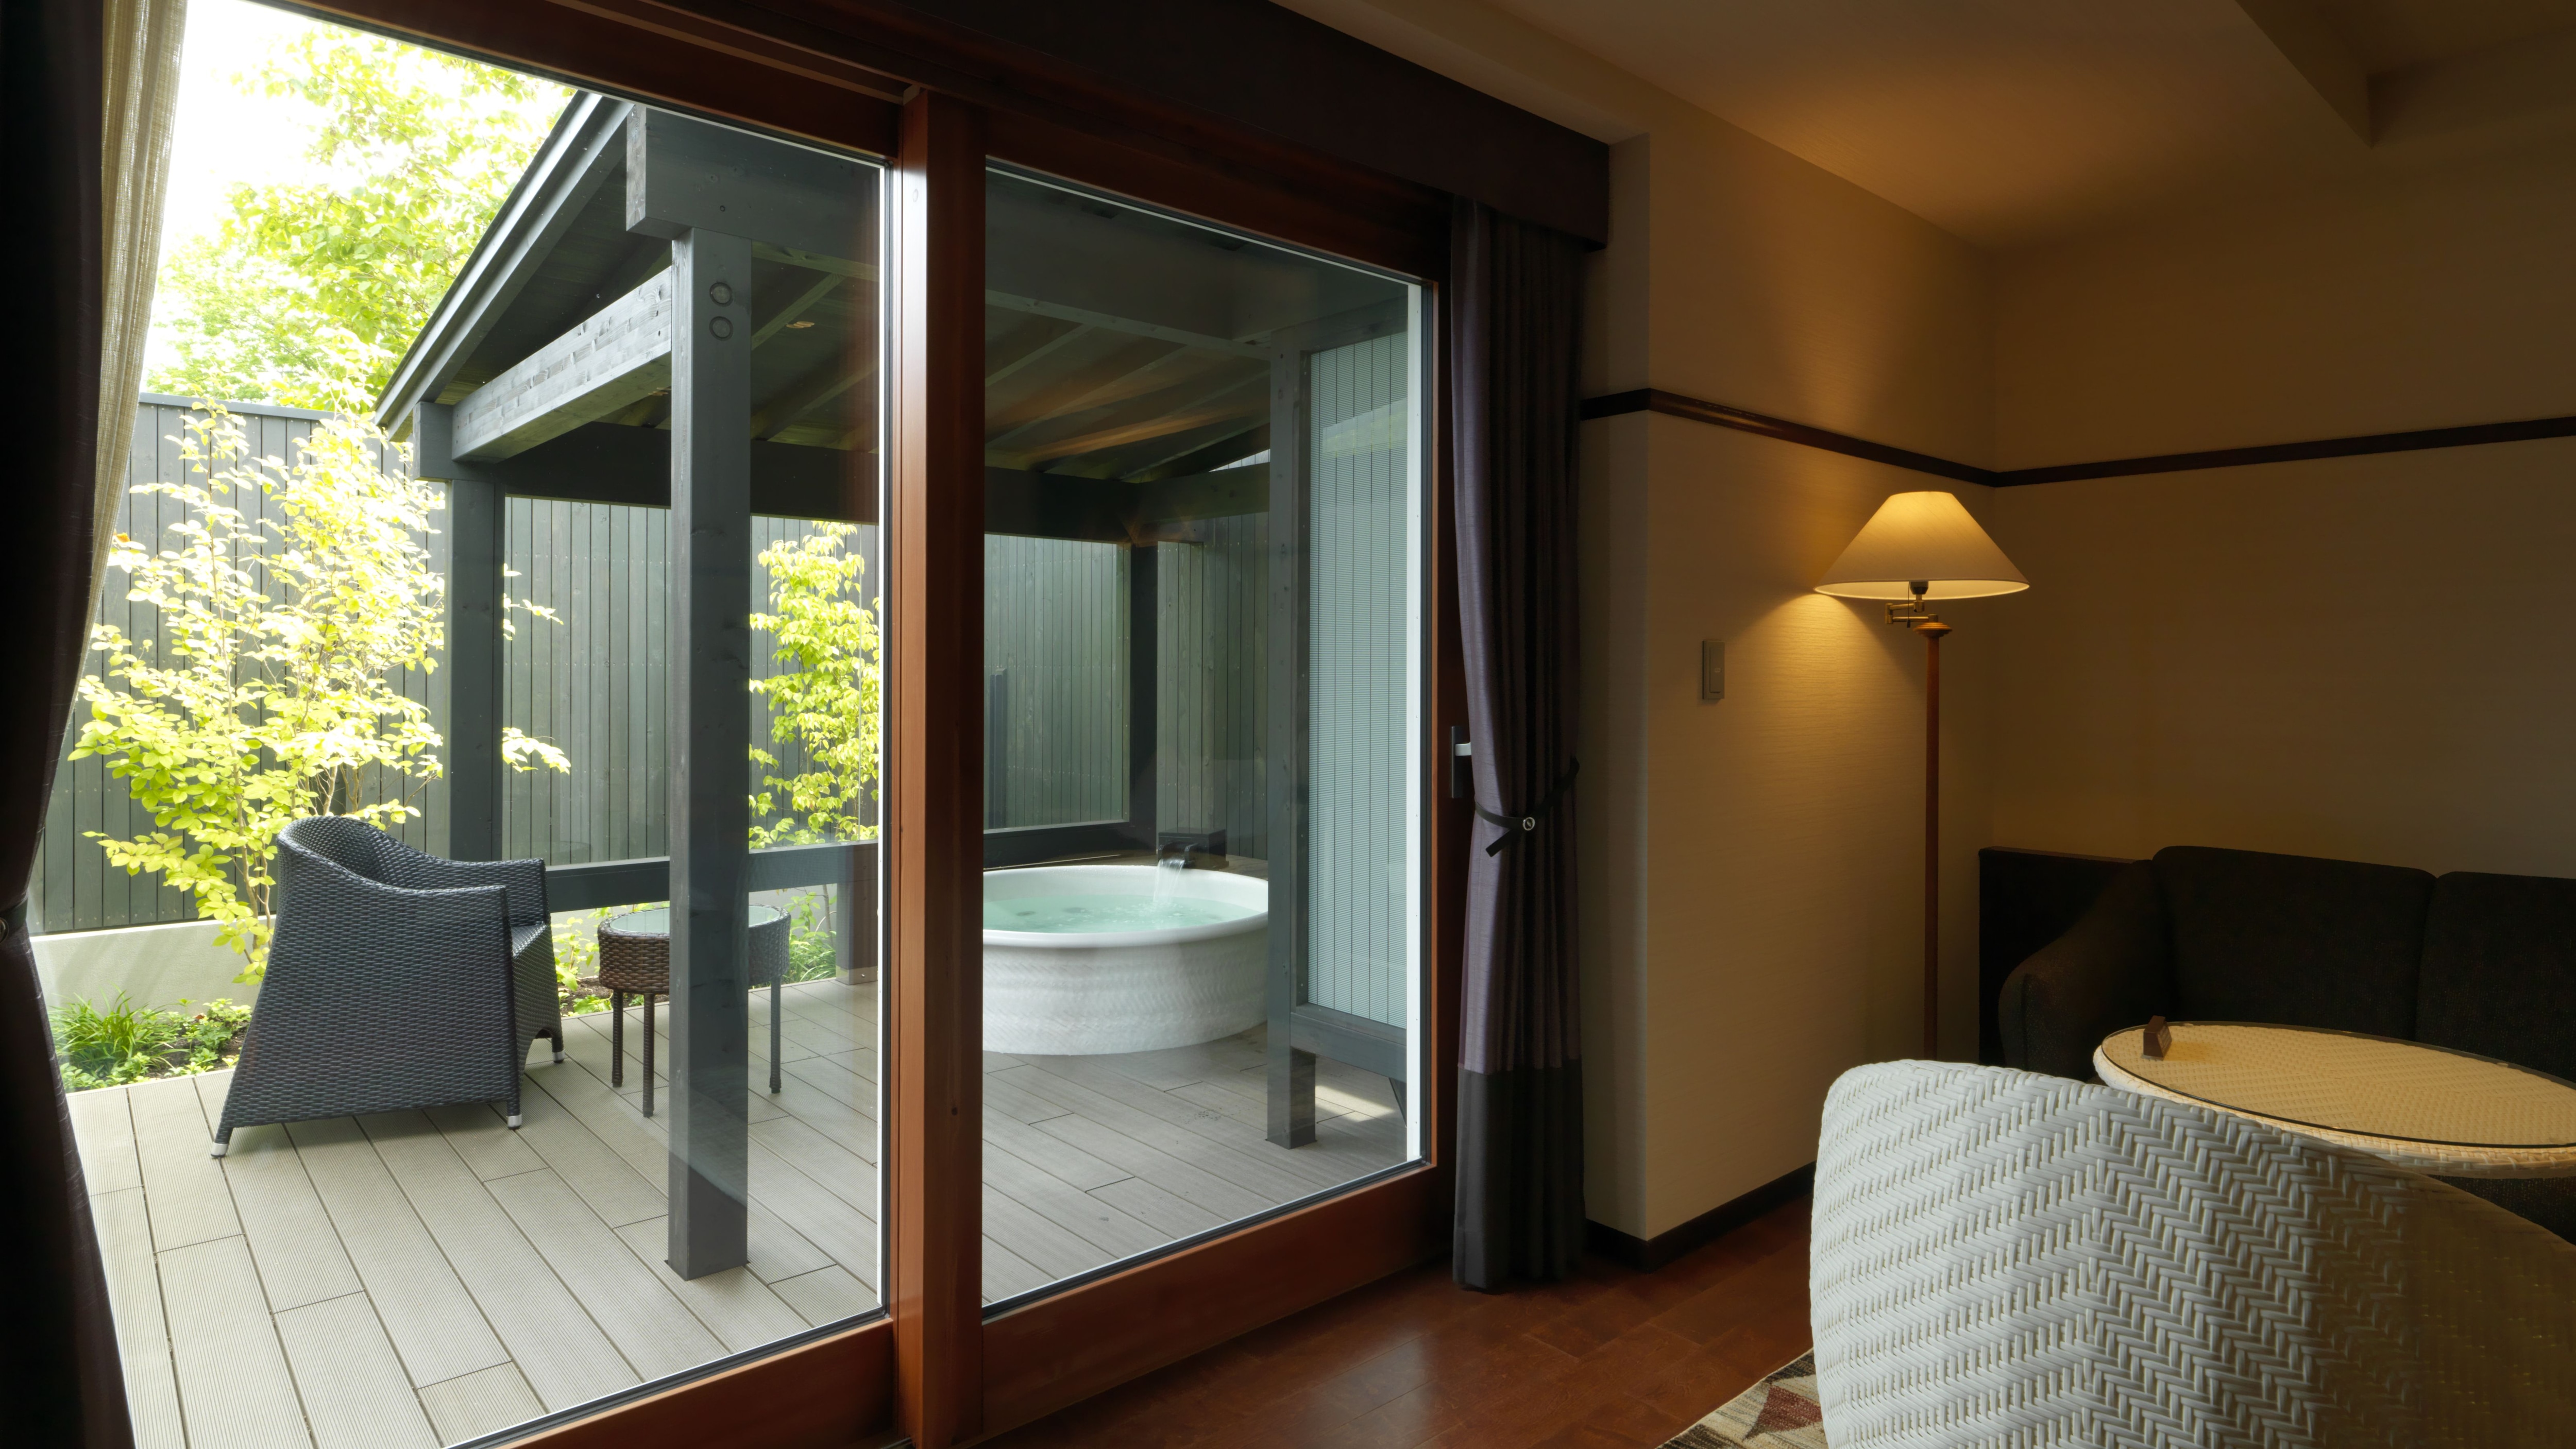 ◆ ห้องเตียงแฝดพร้อมอ่างอาบน้ำกลางแจ้ง / พื้นที่ส่วนตัวที่คุณสามารถเพลิดเพลินกับการอาบน้ำได้อย่างเต็มที่ (ตัวอย่างห้องพัก)